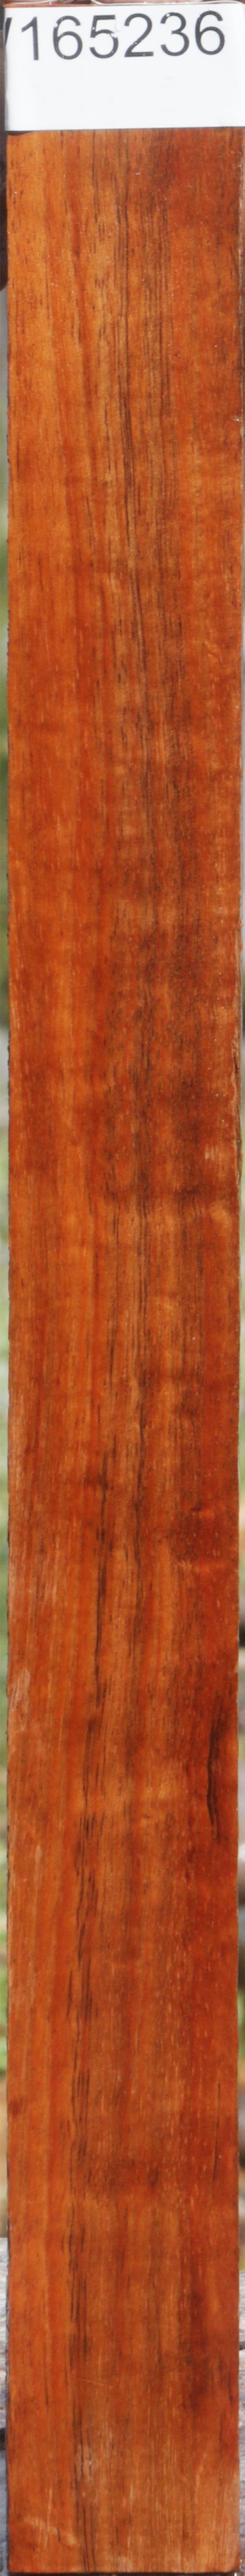 Figured Hawaiian Koa Micro Lumber